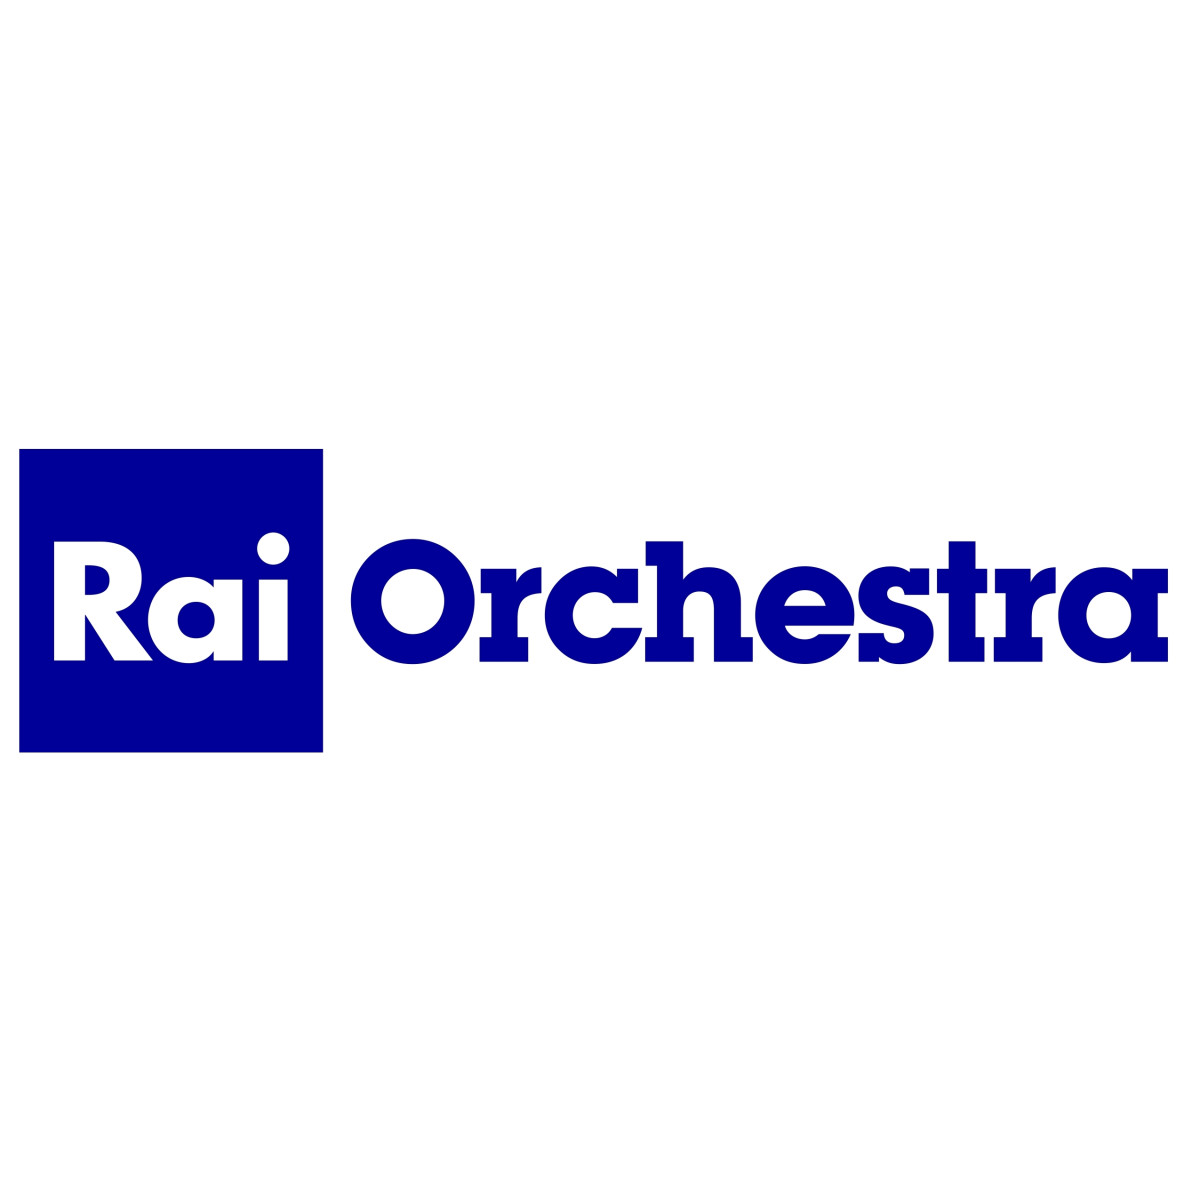 Orchestra Sinfonica Nazionale della RAI